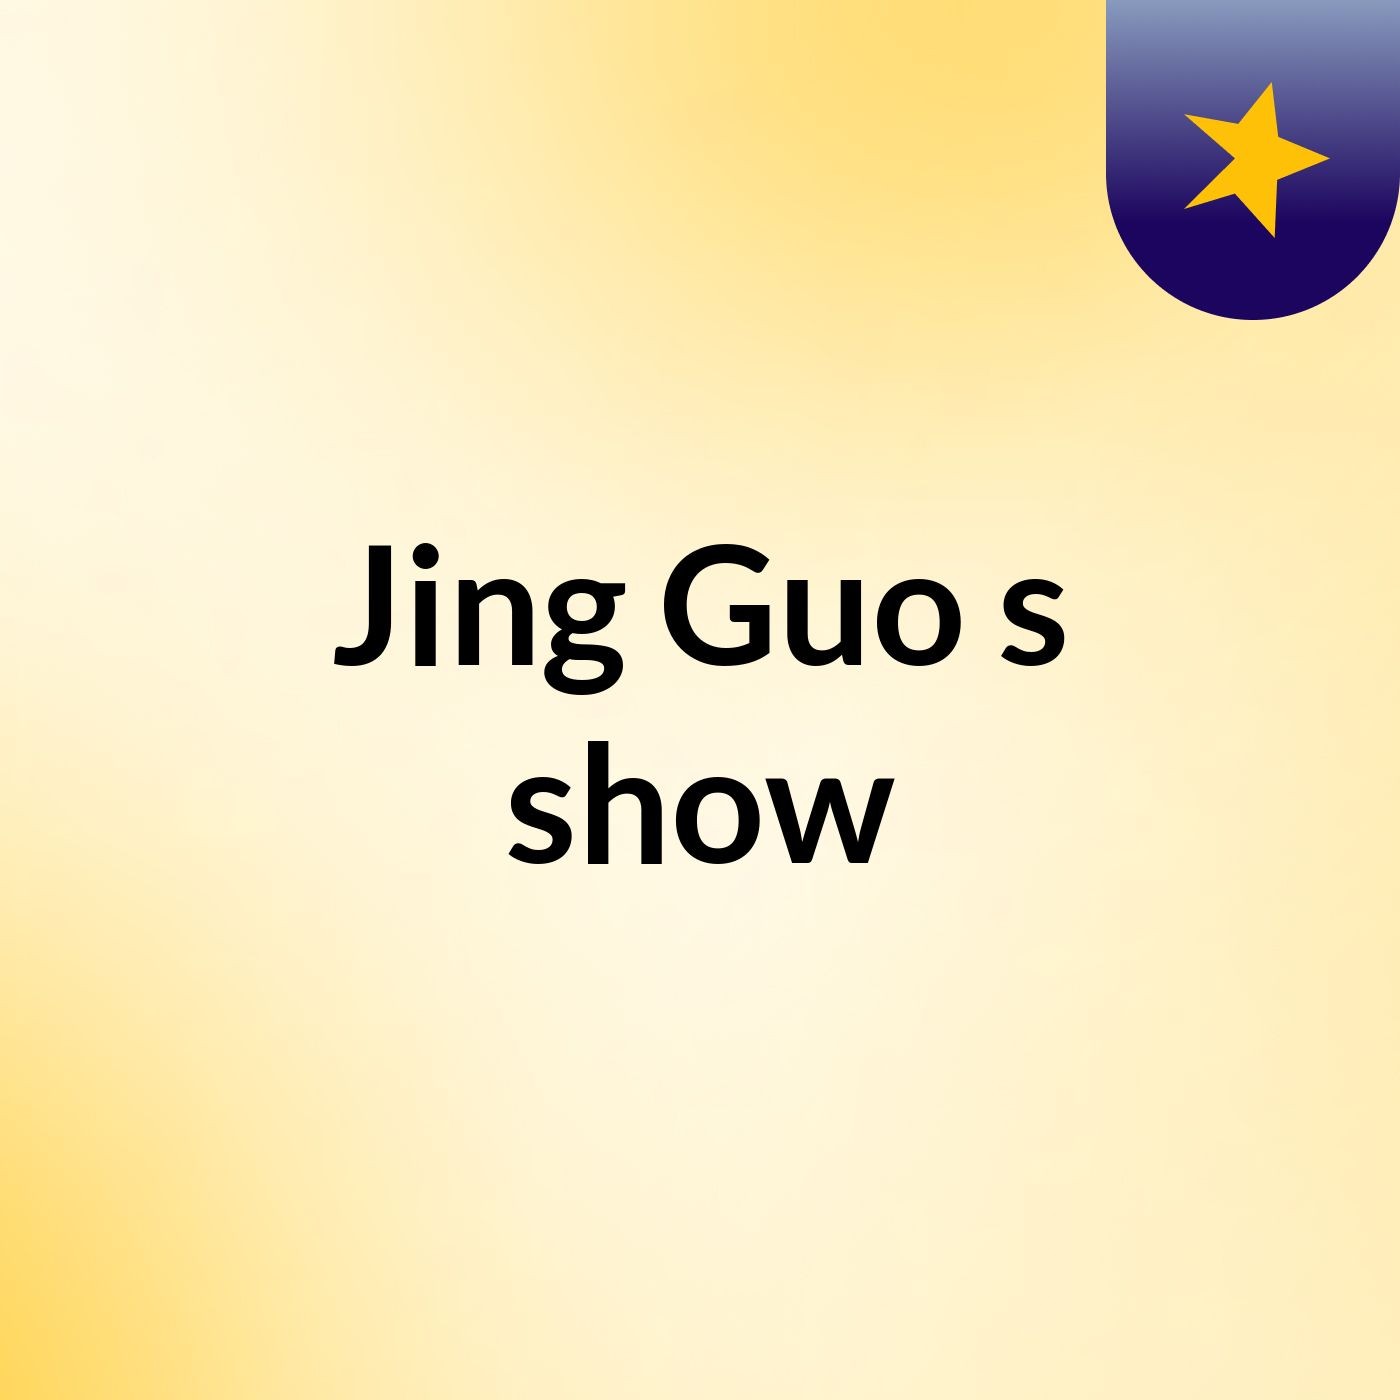 Jing Guo's show